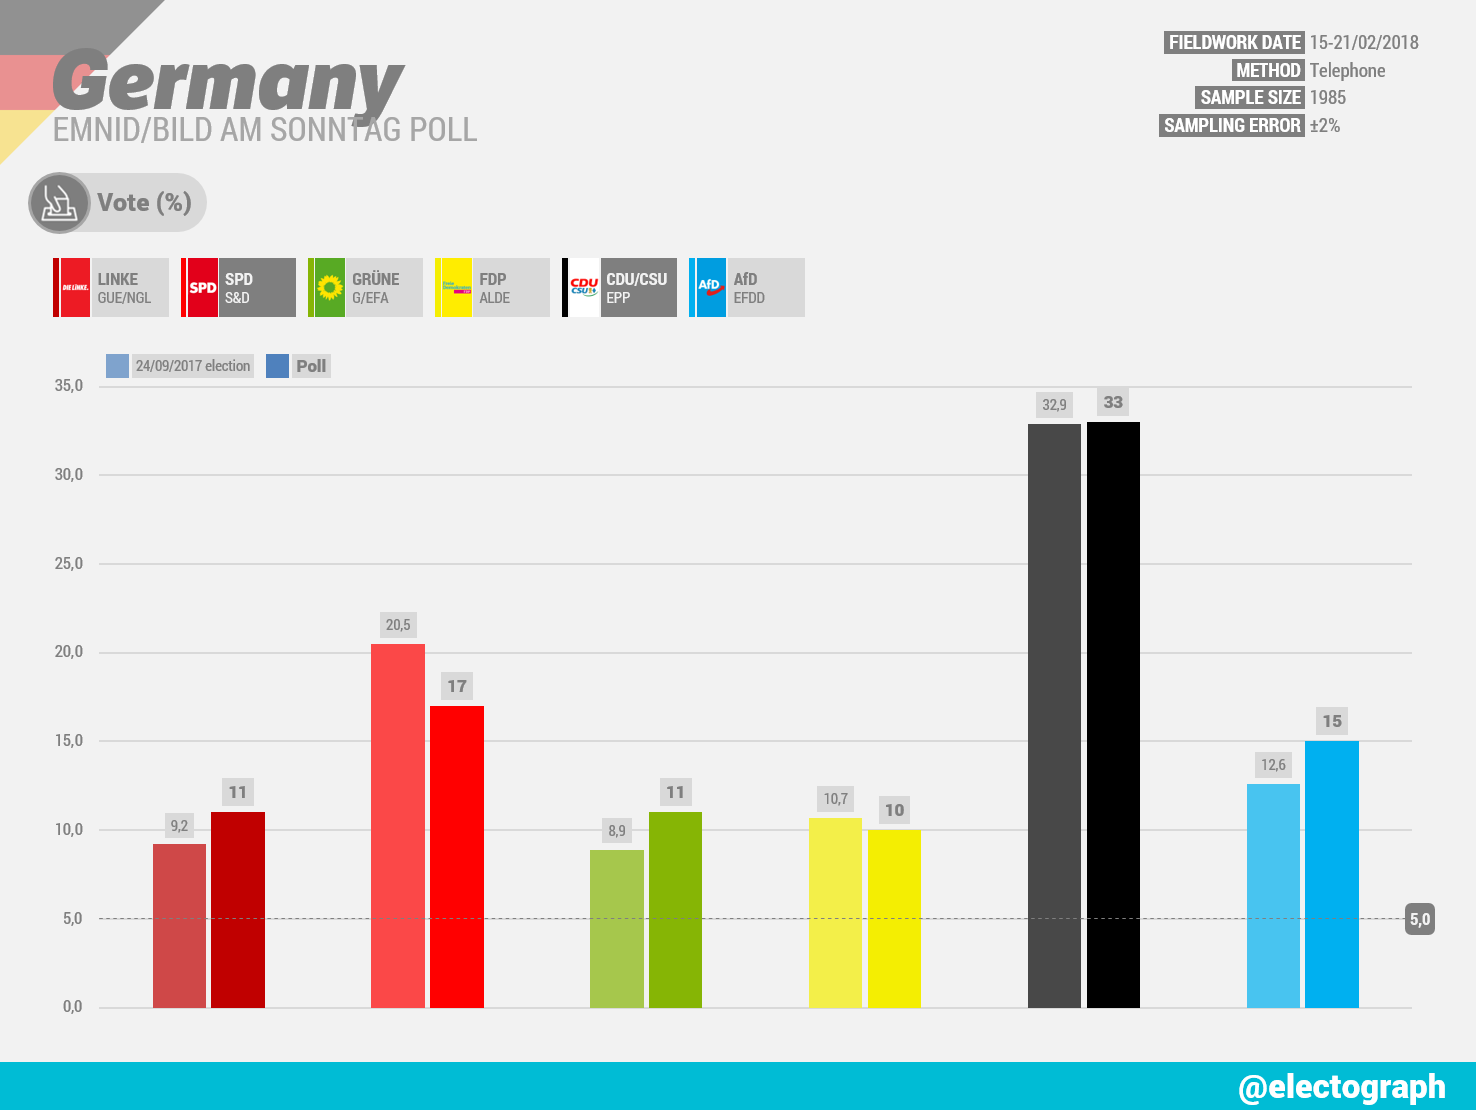 GERMANY Emnid poll chart for Bild am Sonntag, February 2018